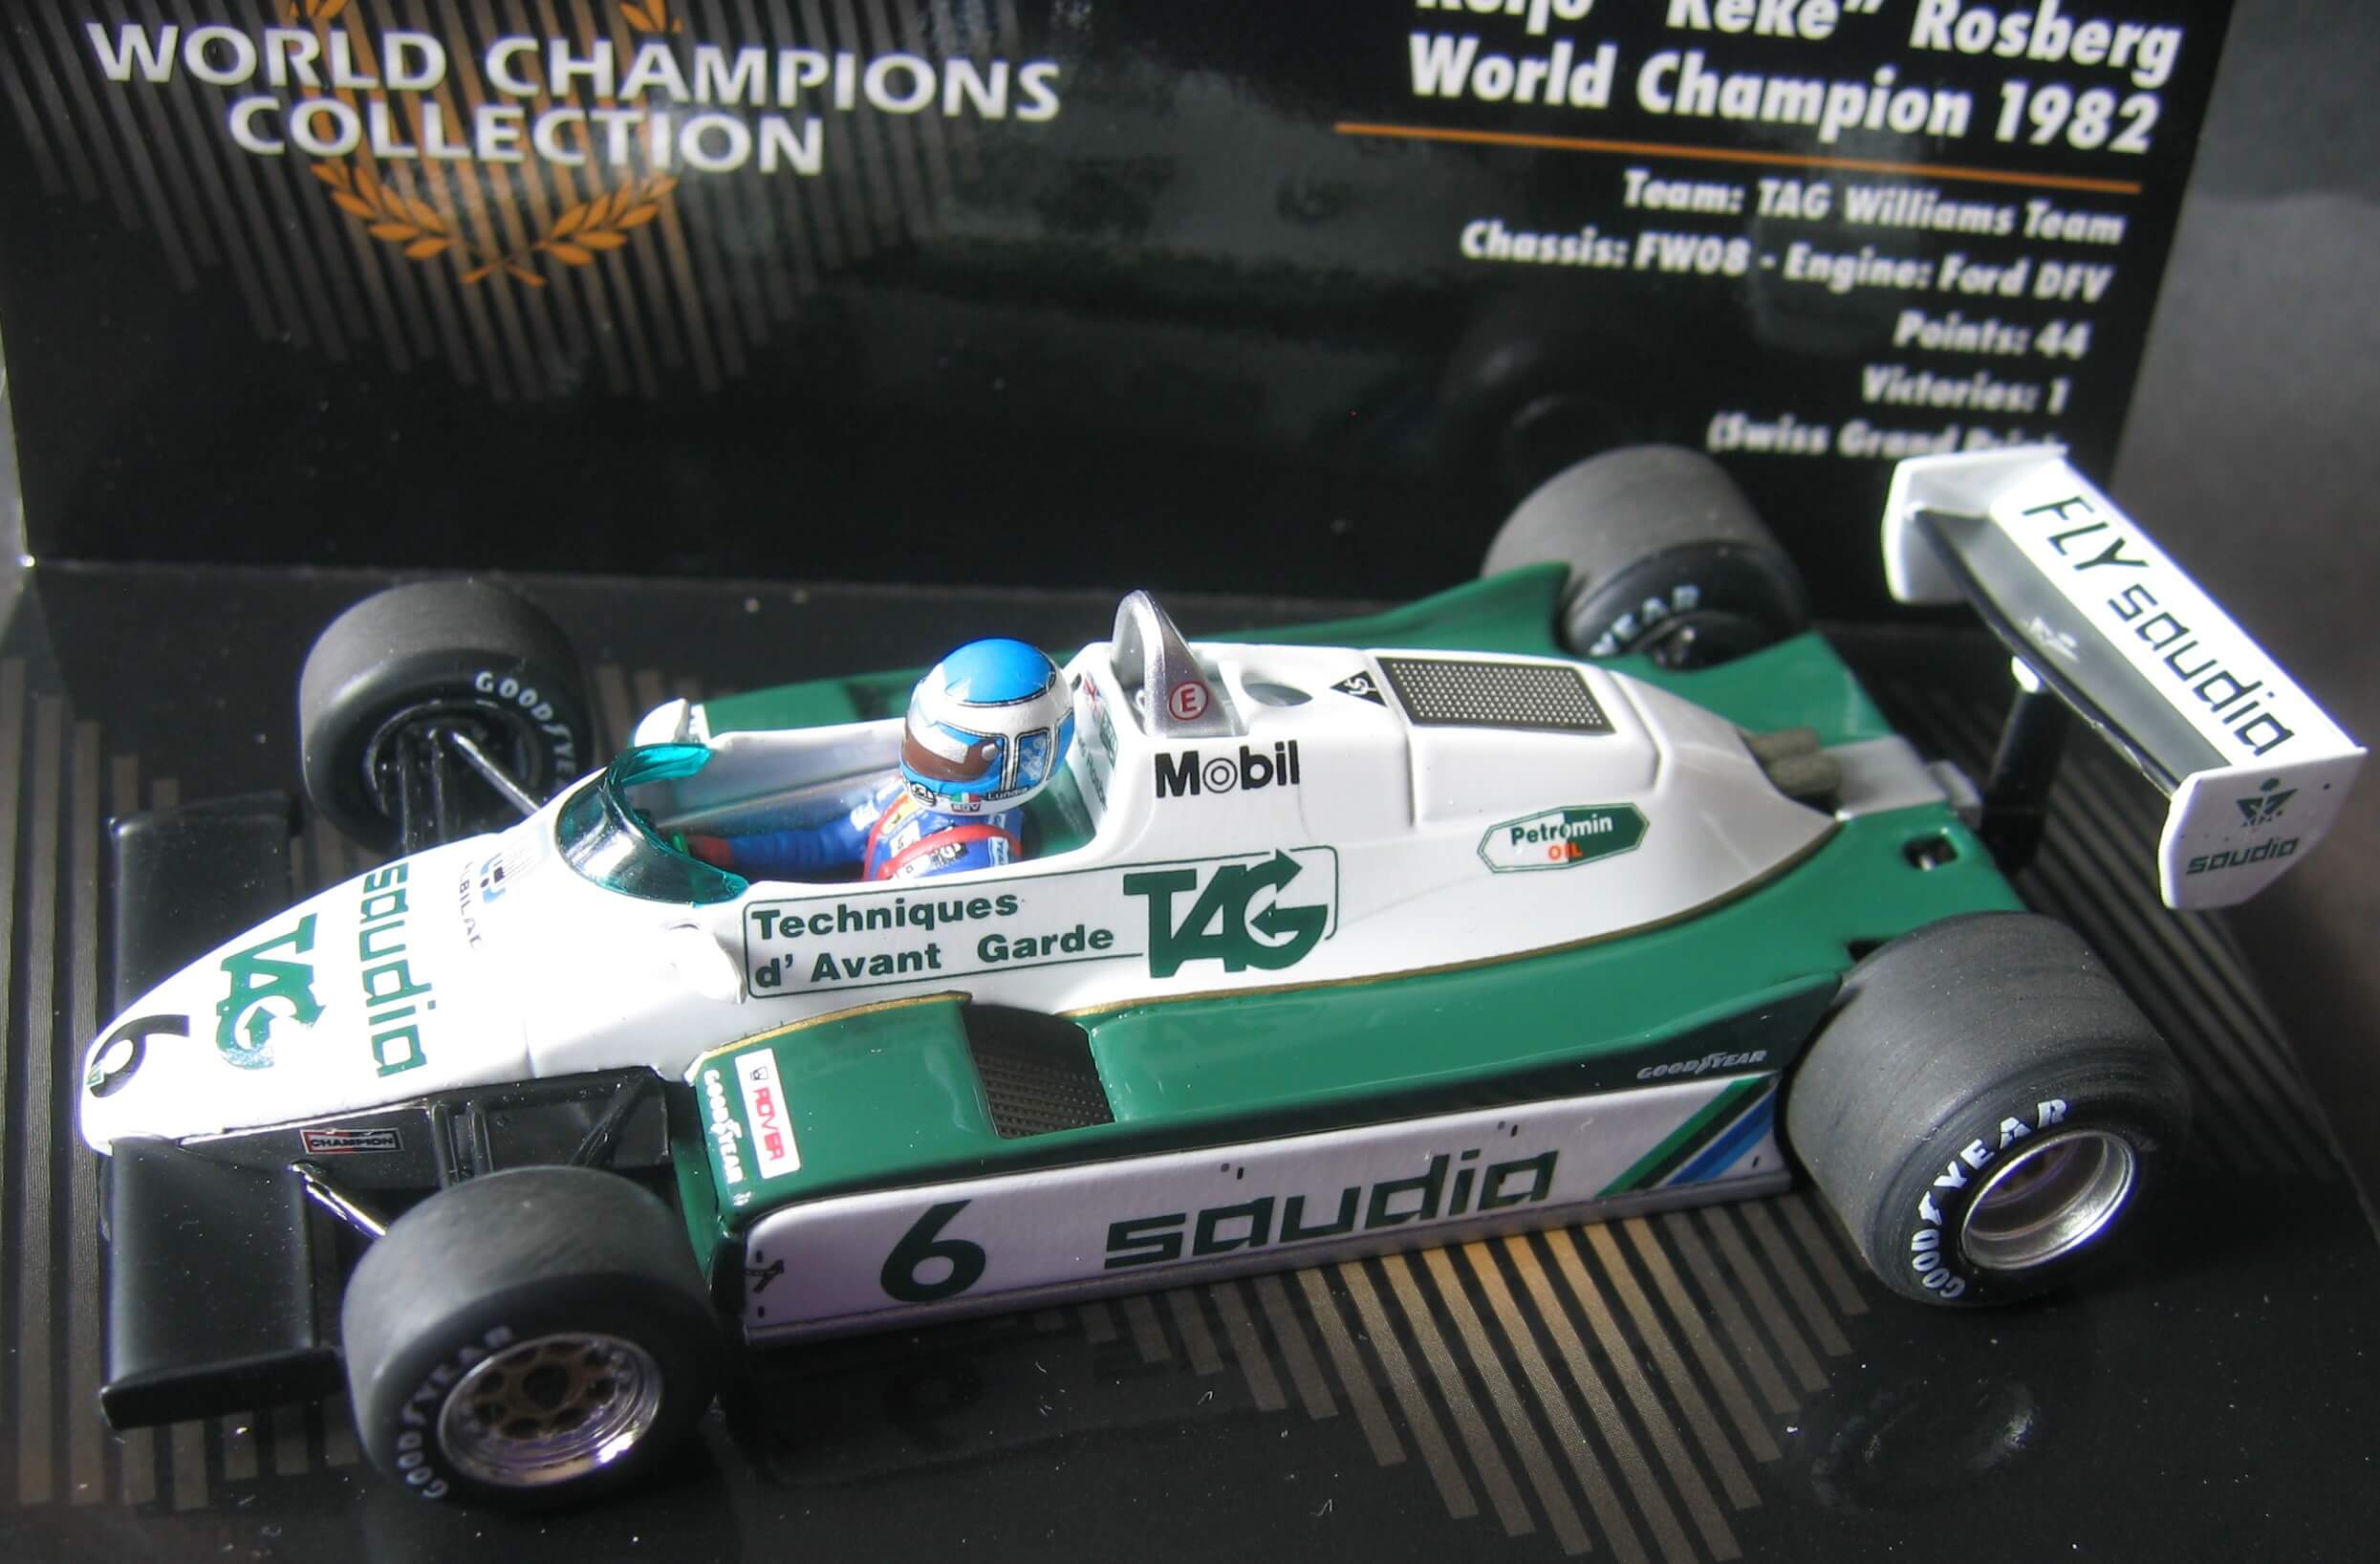 Williams 1982 Keke Rosberg